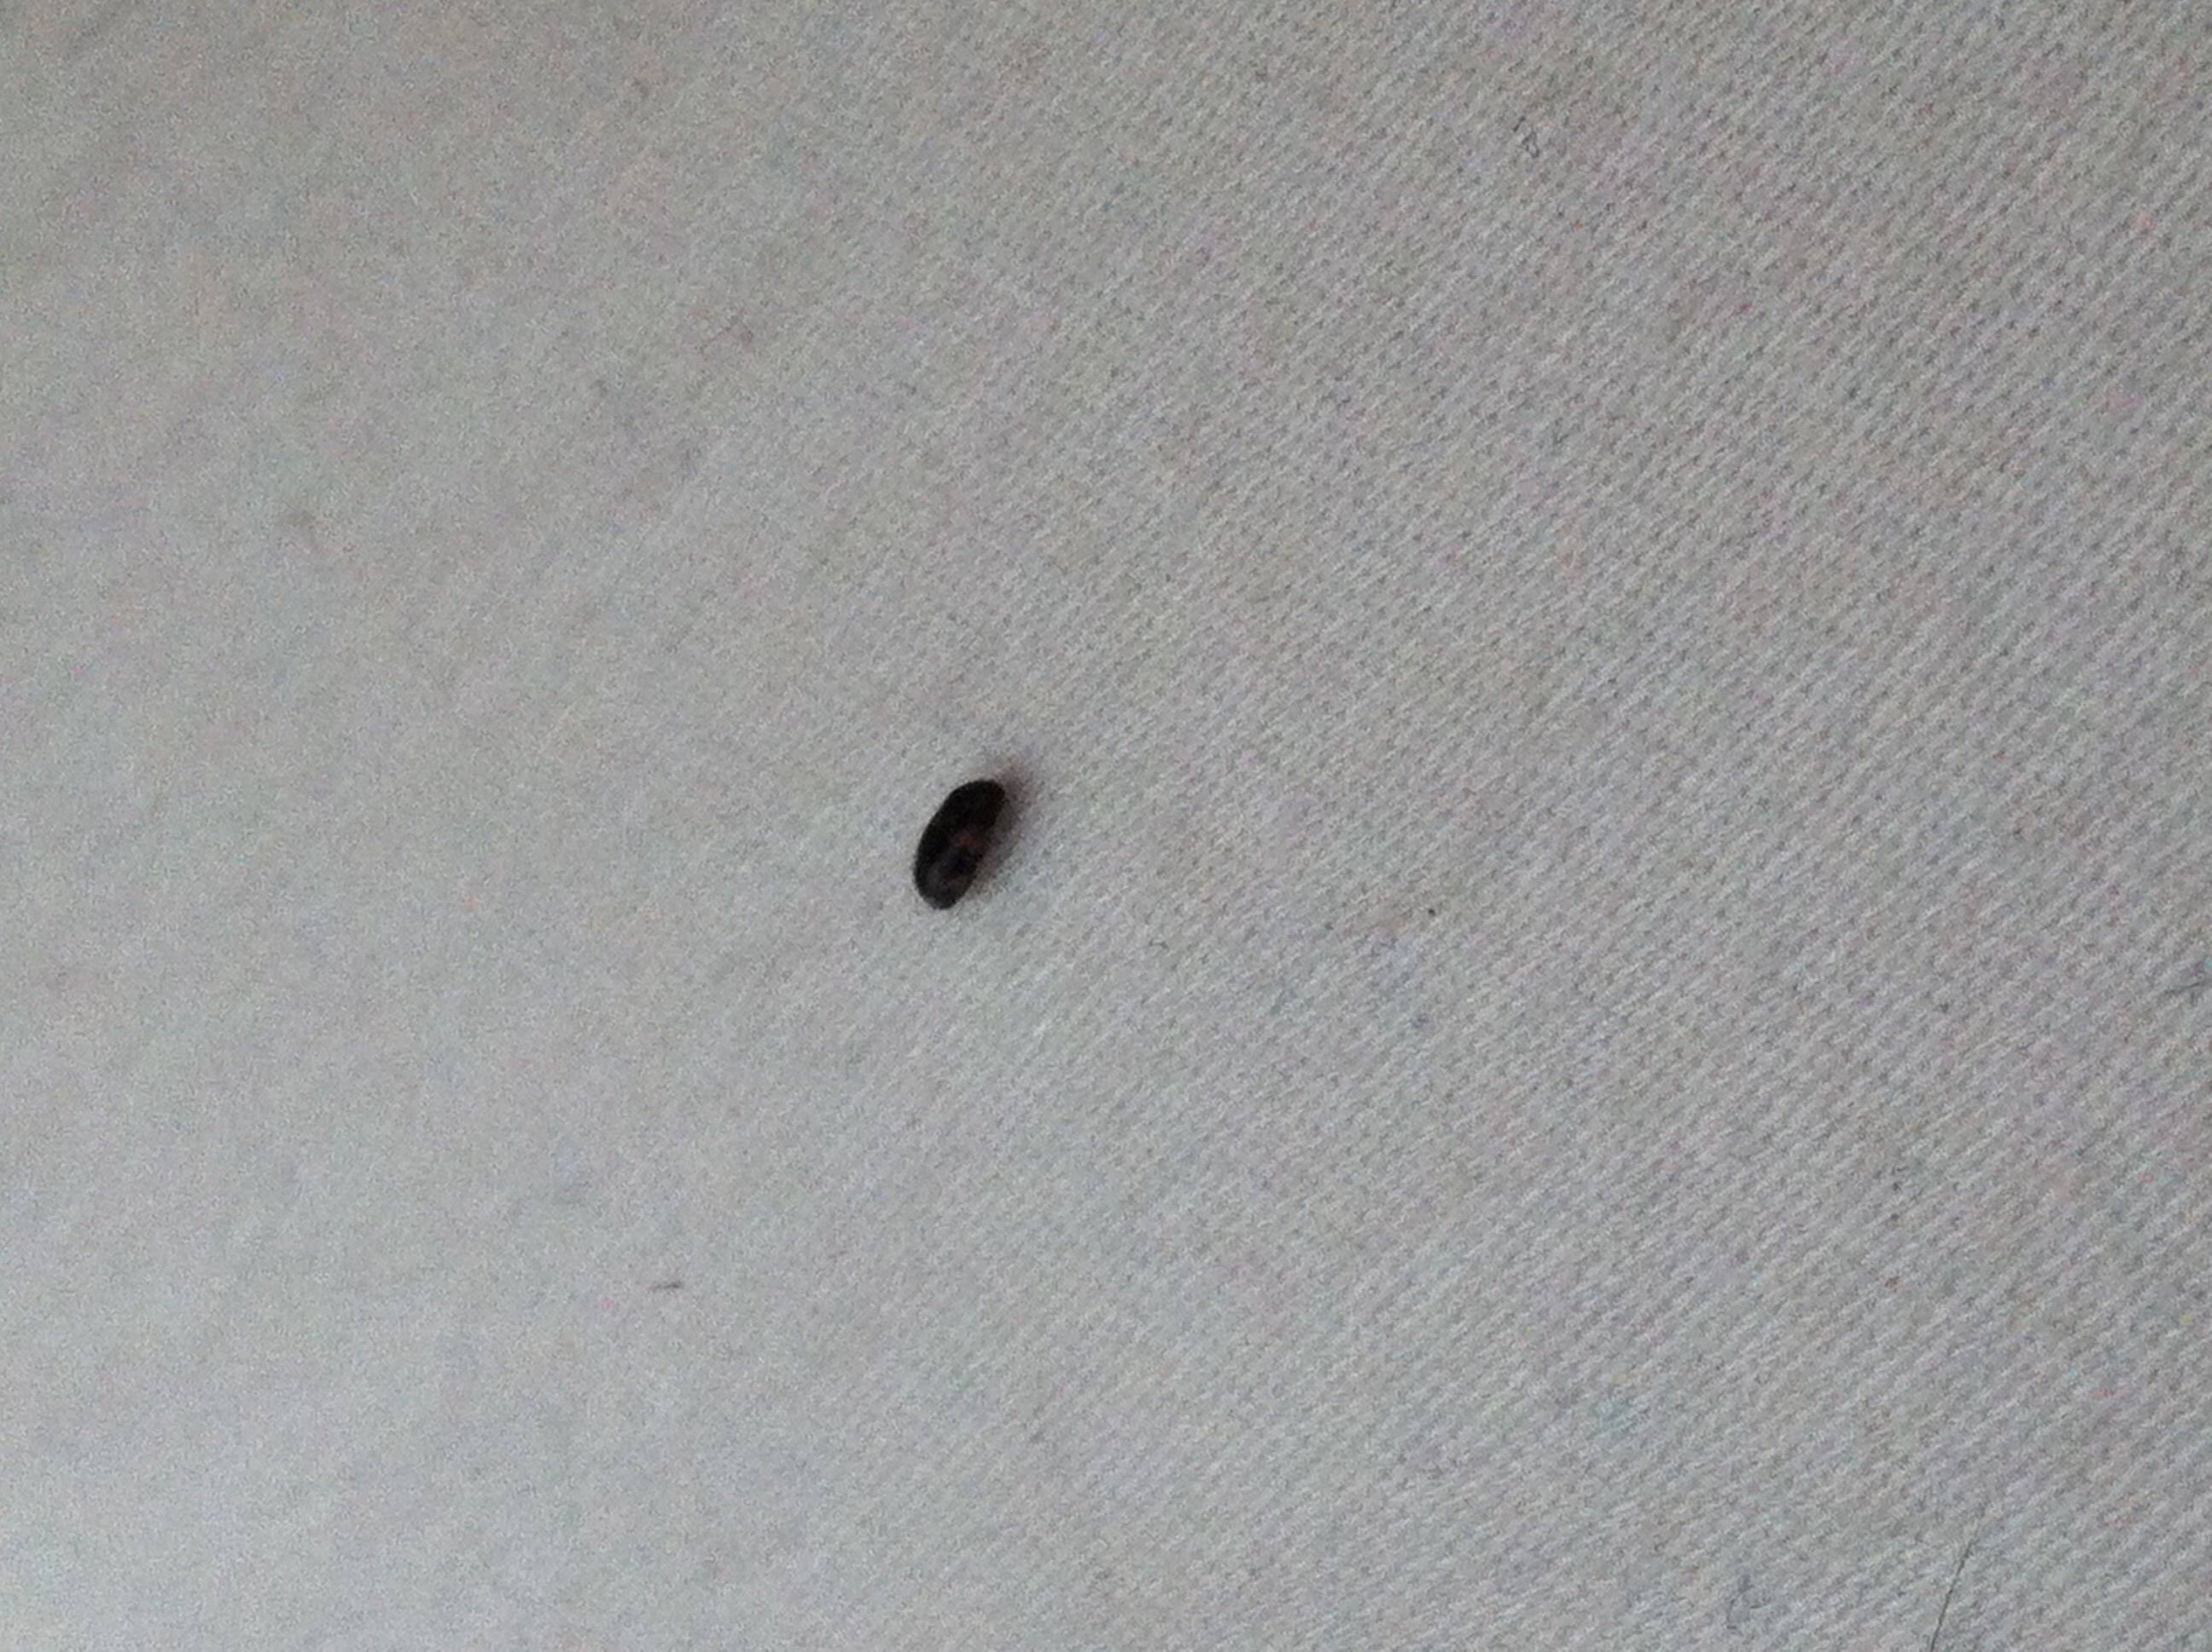 kleines schwarzes käfer ähnliches insekt? (Insekten ...